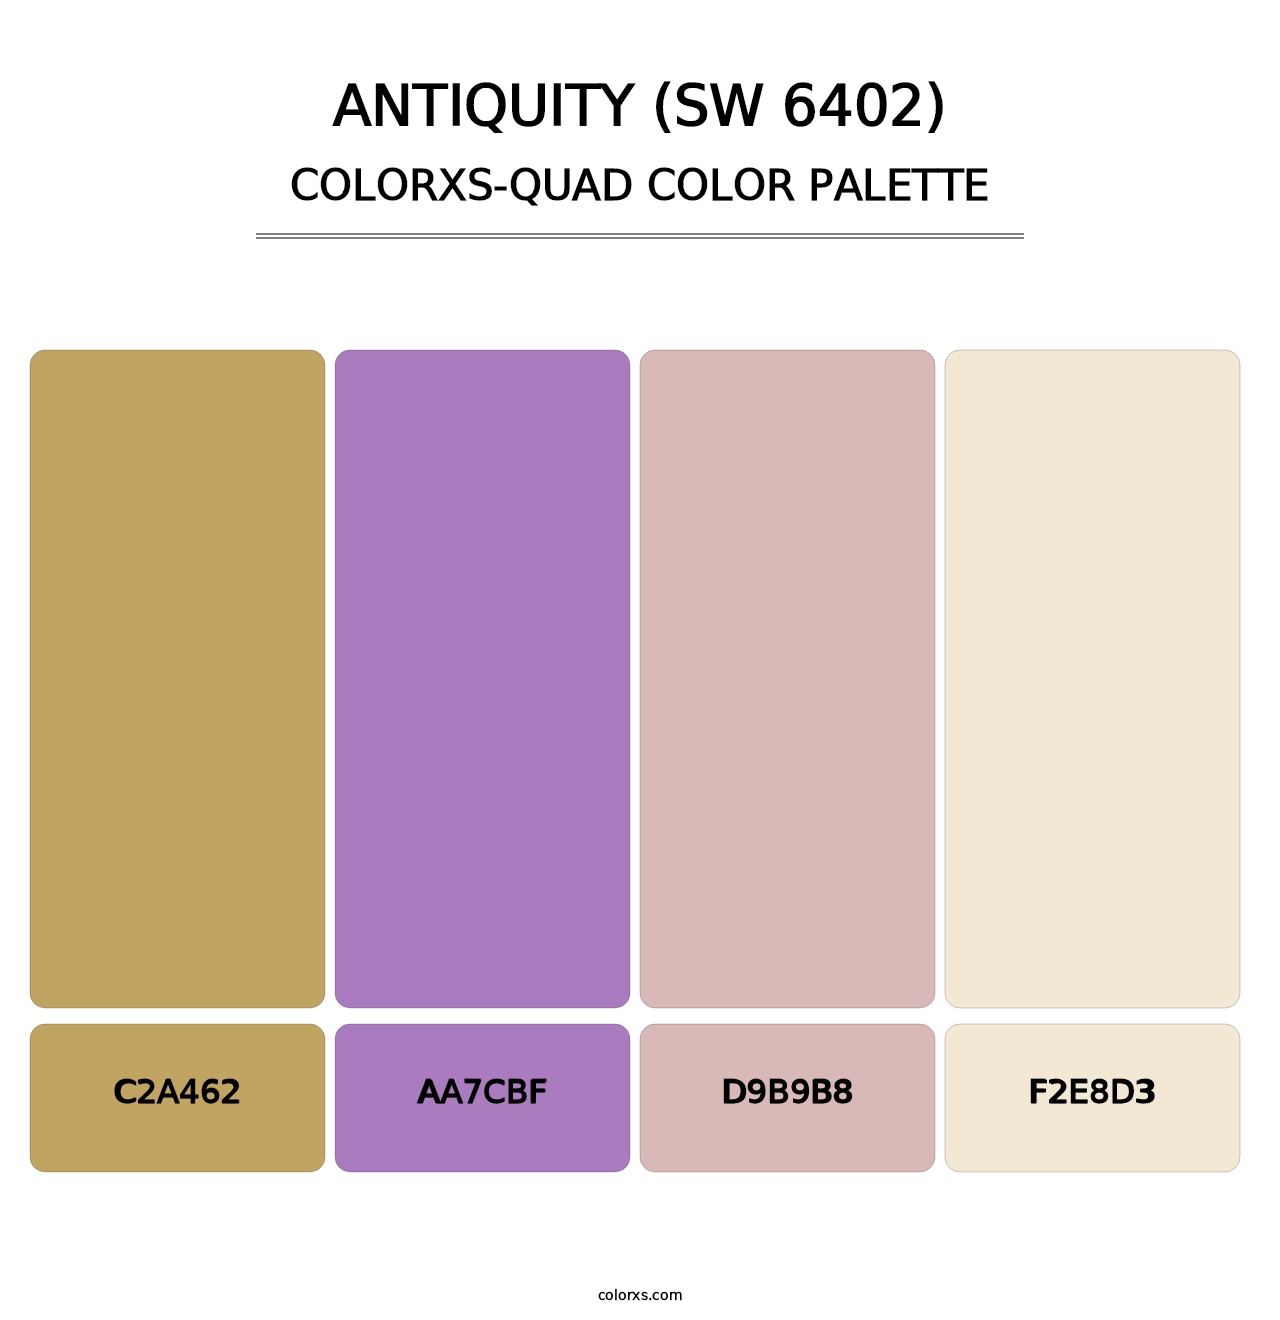 Antiquity (SW 6402) - Colorxs Quad Palette